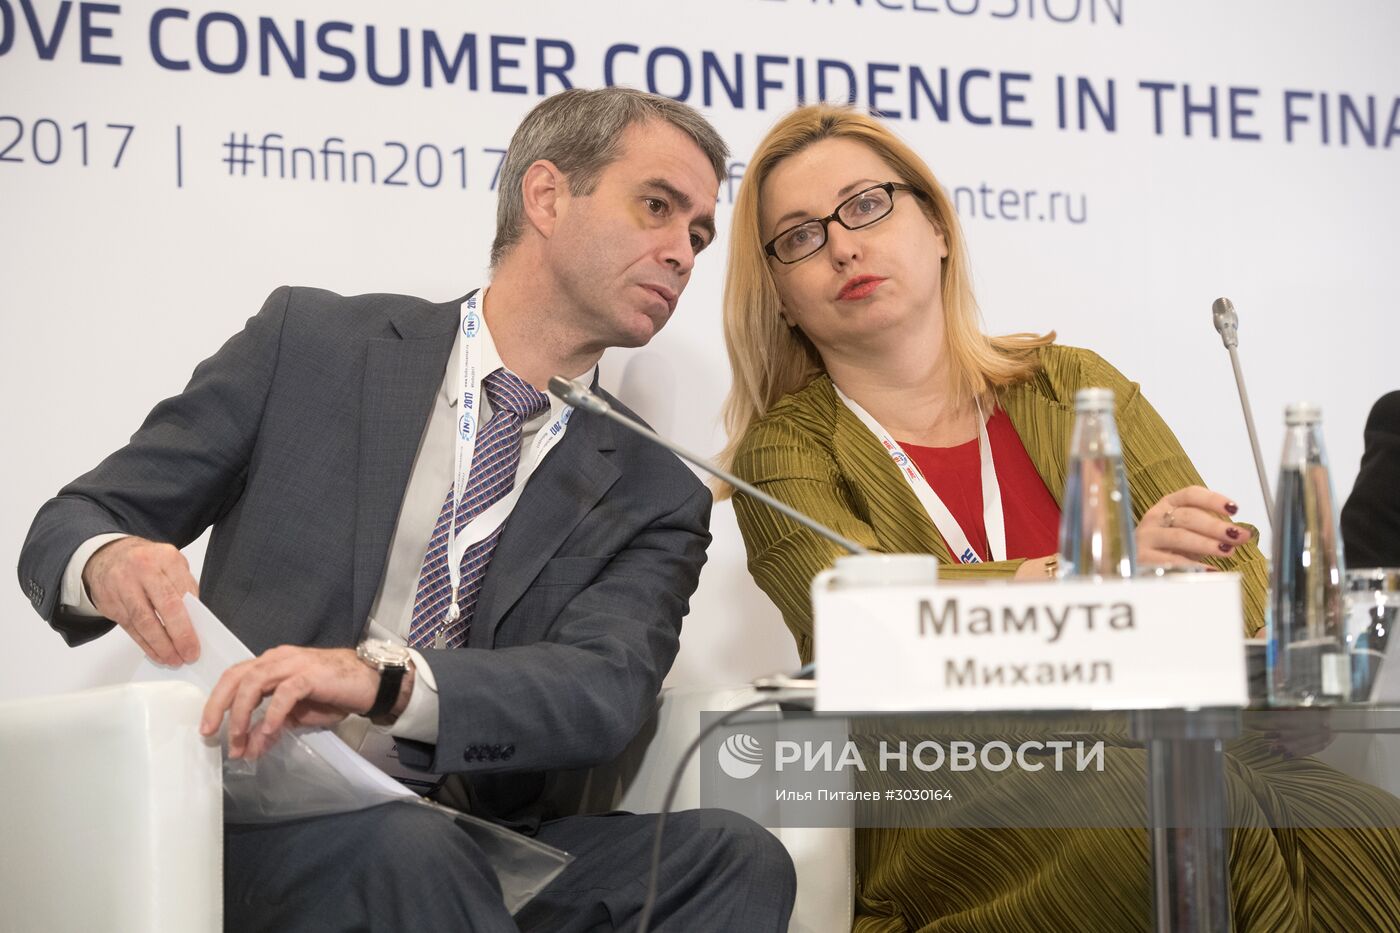 III Международная конференция по финансовой грамотности "Финфин- 2017"